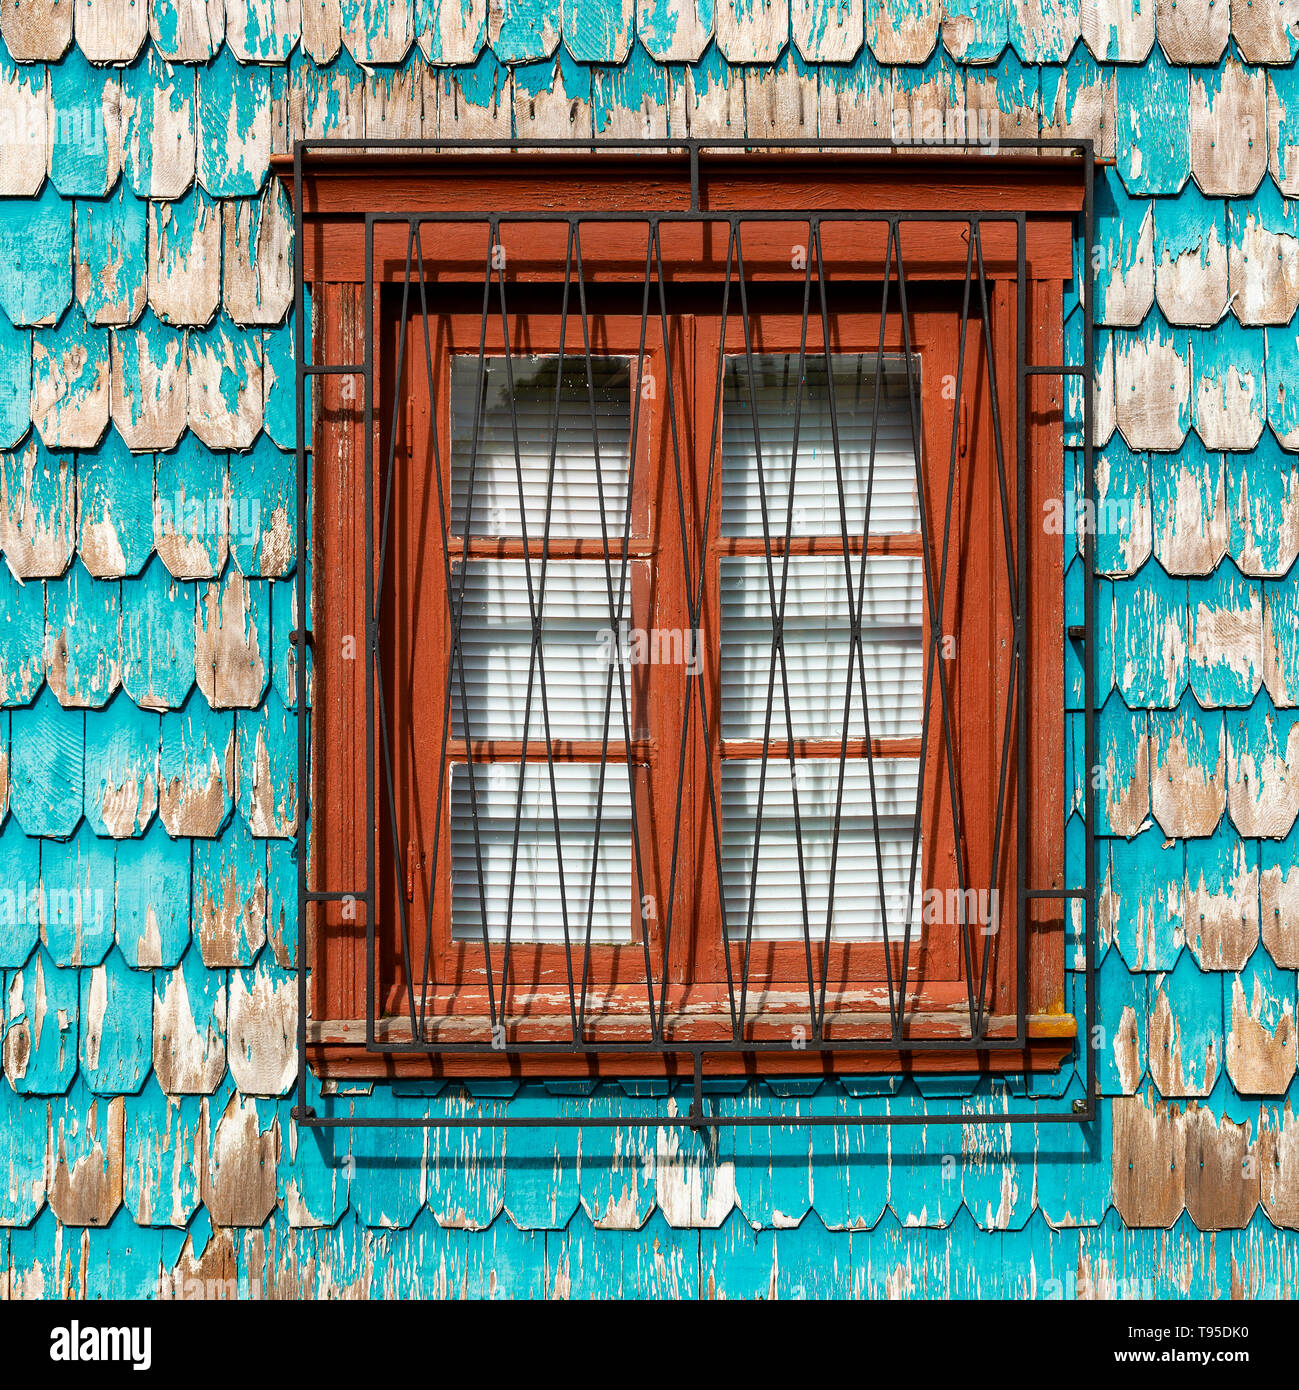 Platz Architektur von Türkis lärche Holztäfelung Fassade mit Fenster in Puerto Varas, traditionellen im chilenischen Seengebiet und Patagonien, Chile. Stockfoto